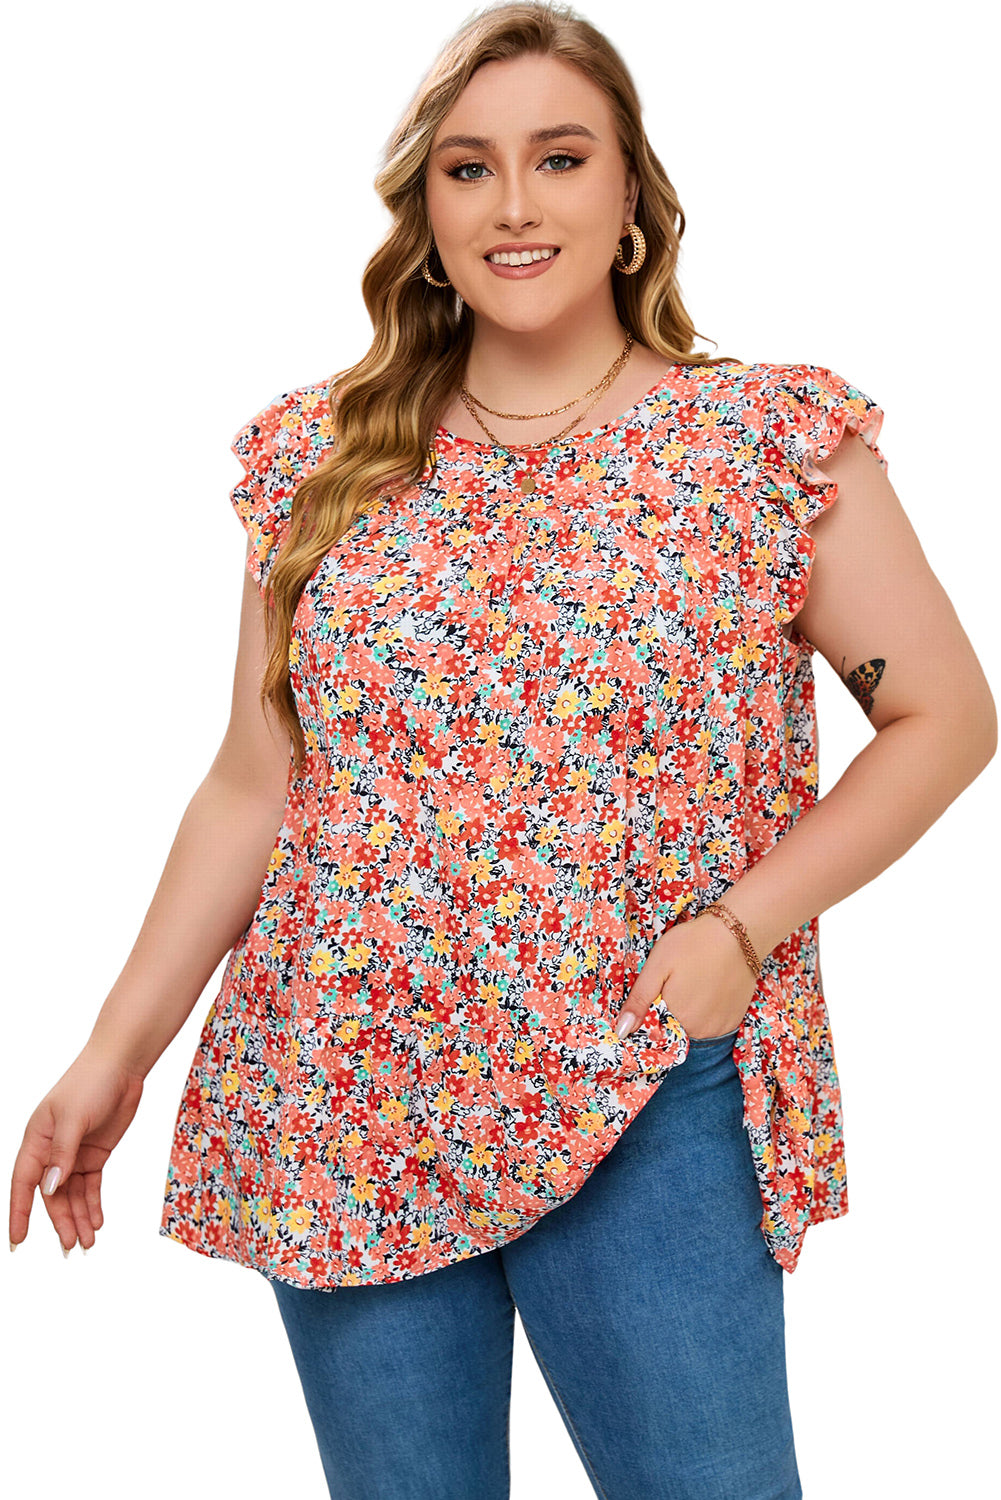 Večbarvna večplastna majica s cvetličnim potiskom in naborki v velikosti Boho